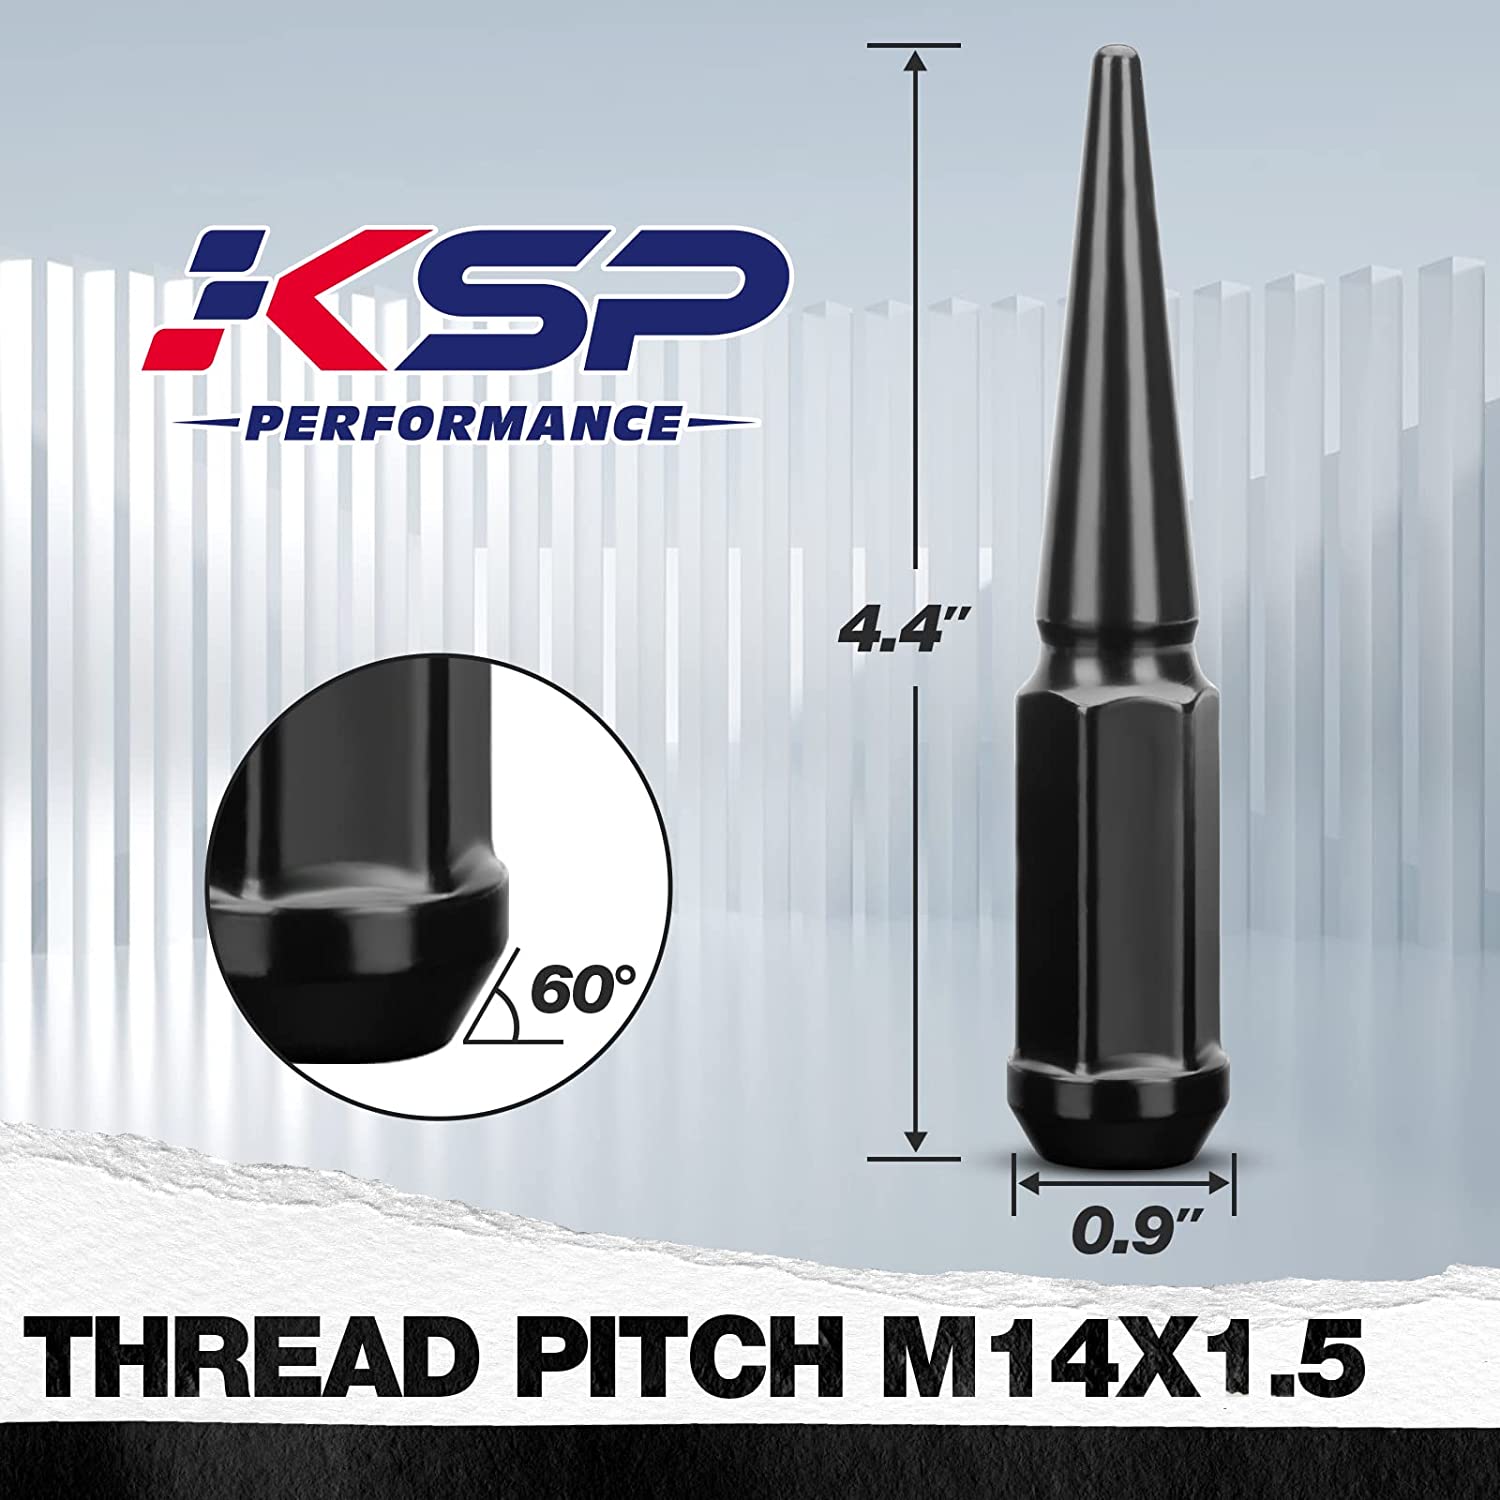 KSP Spike Lug Nuts 32pcs+1key M14x1.5 Black 3/4